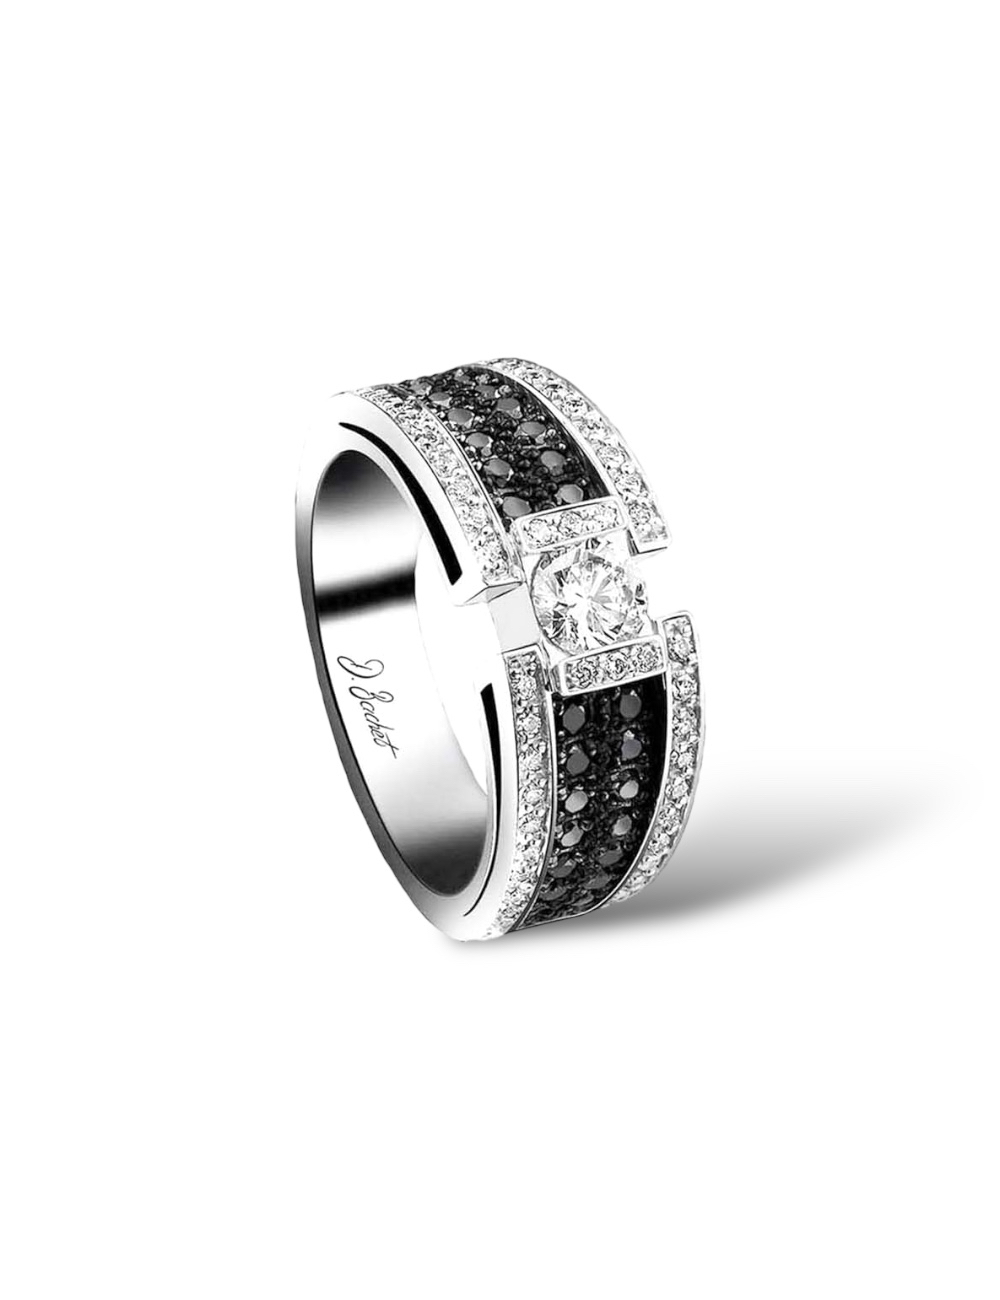 Bague luxe femme, diamant blanc 0.50ct, pavage diamants blancs/noirs, design iconique BlackLight, Maison D.Bachet.